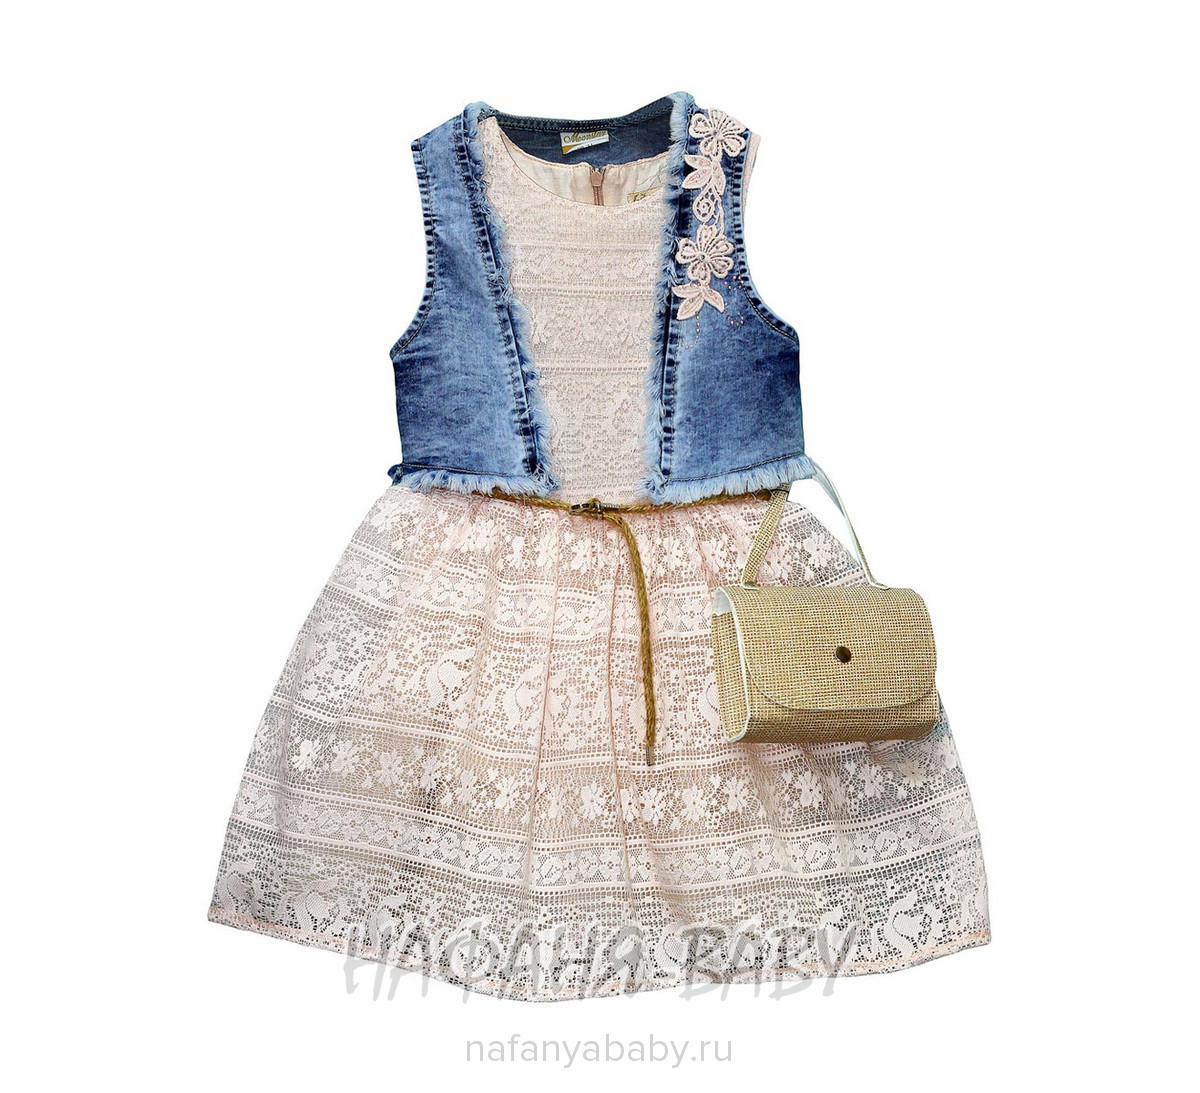 Комплект (платье+джинсовое болеро+сумочка) MOONSTAR, купить в интернет магазине Нафаня. арт: 7846.